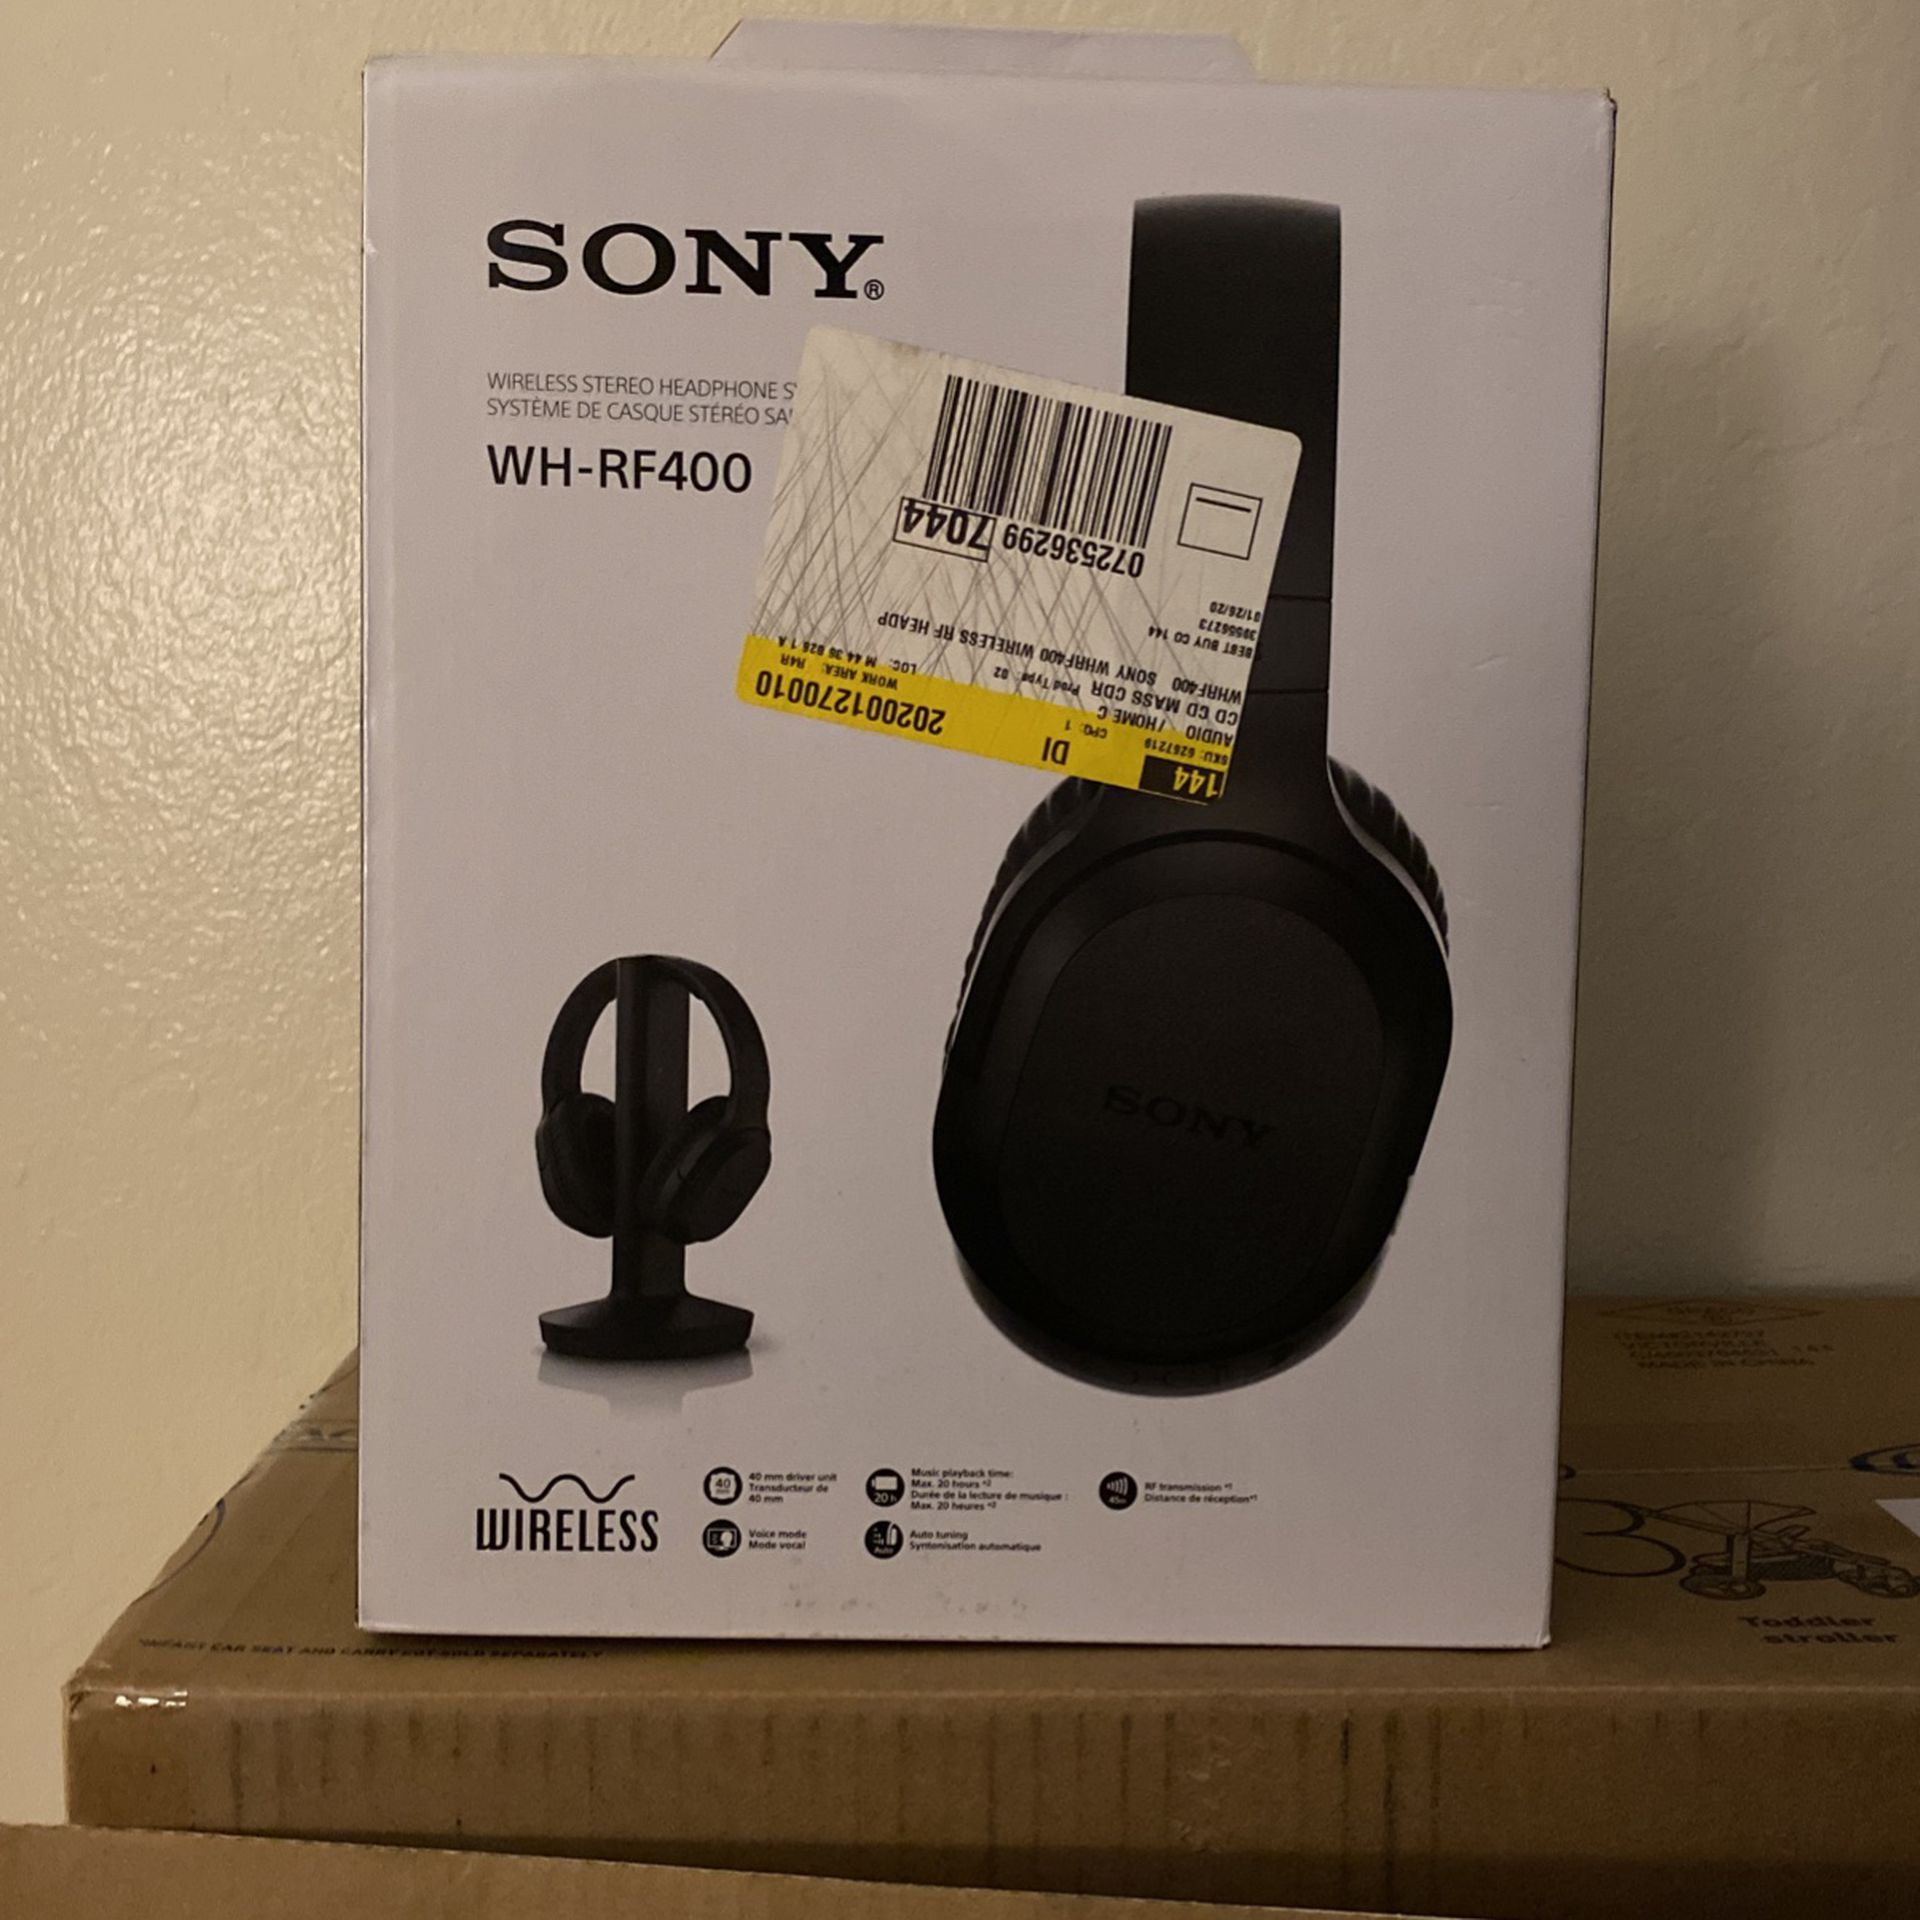 Sony WH-RF400 Wireless Headphones